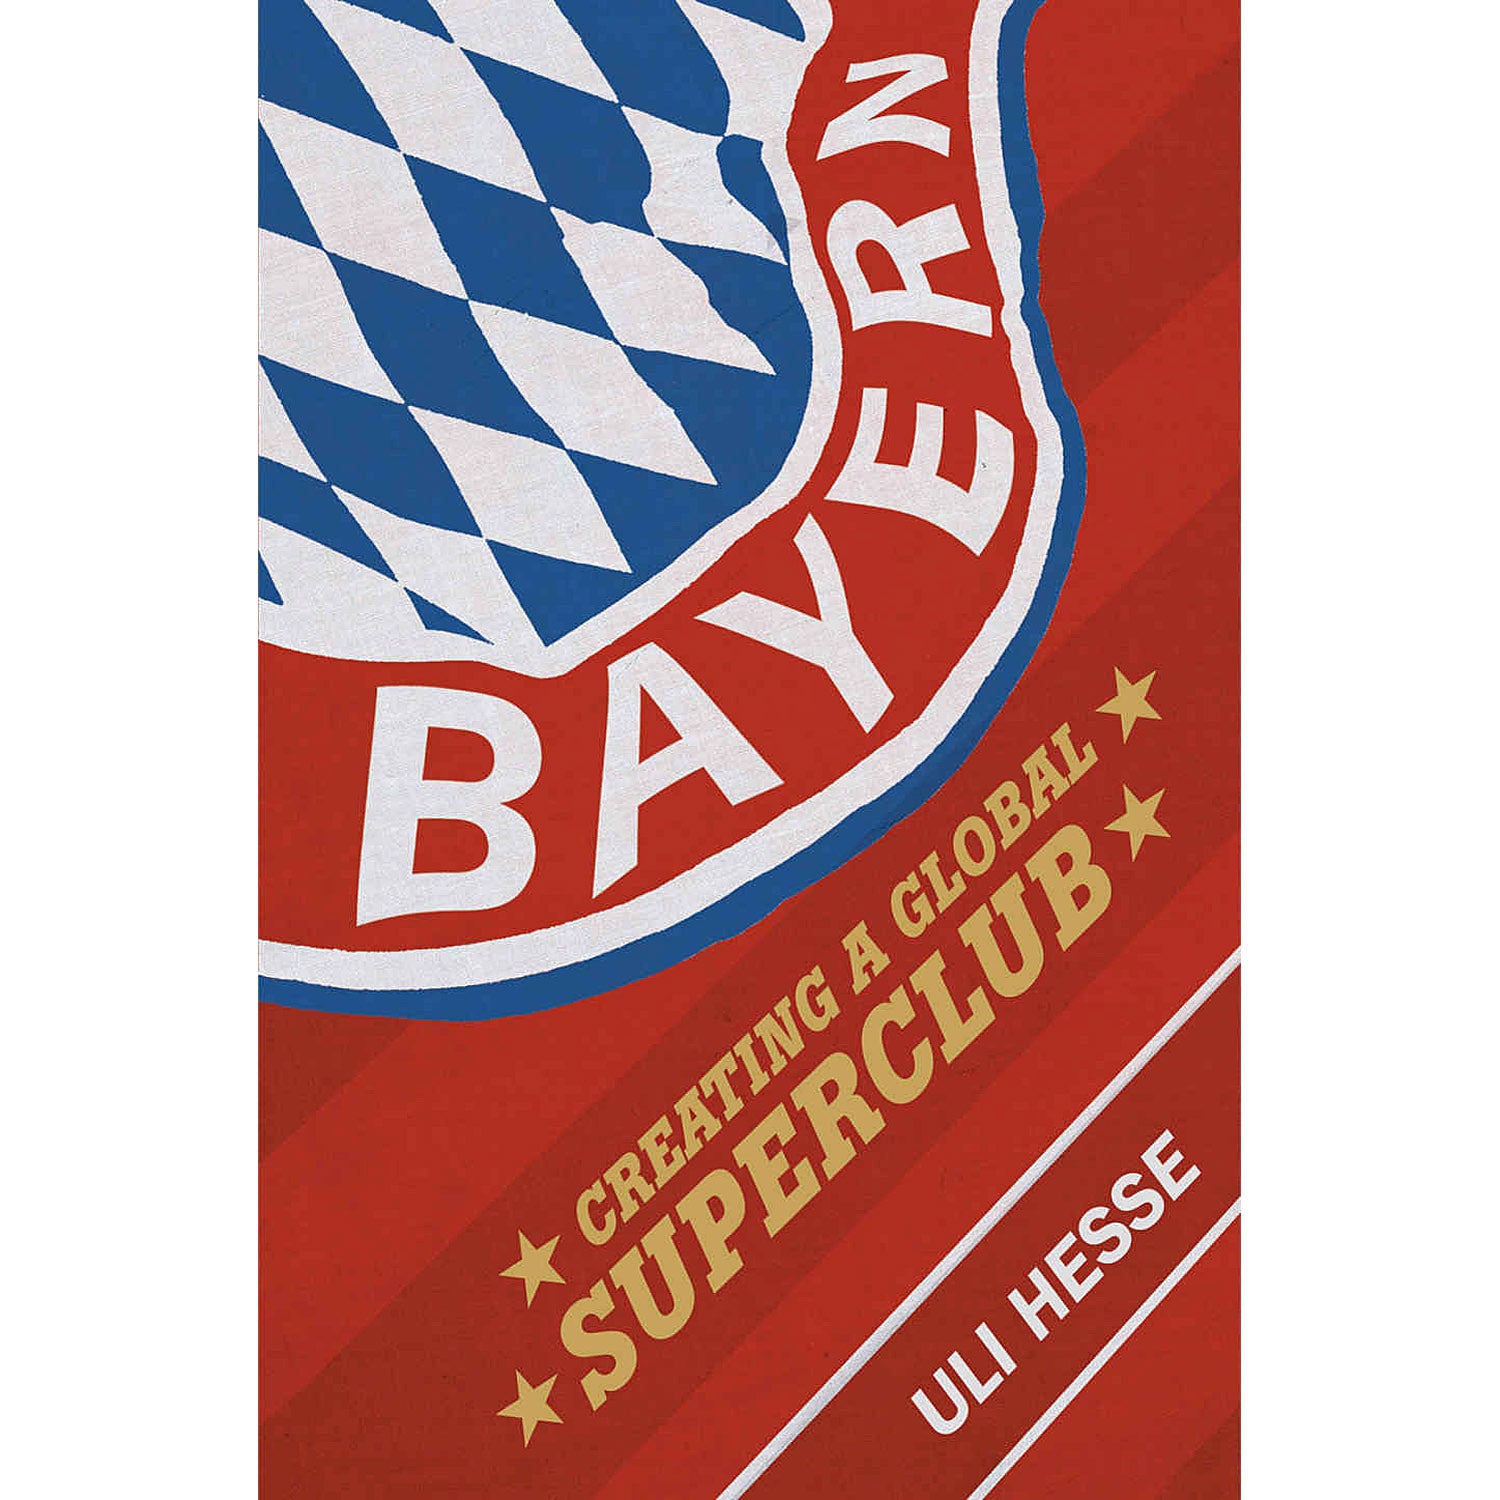 Bayern – Creating a Global Superclub